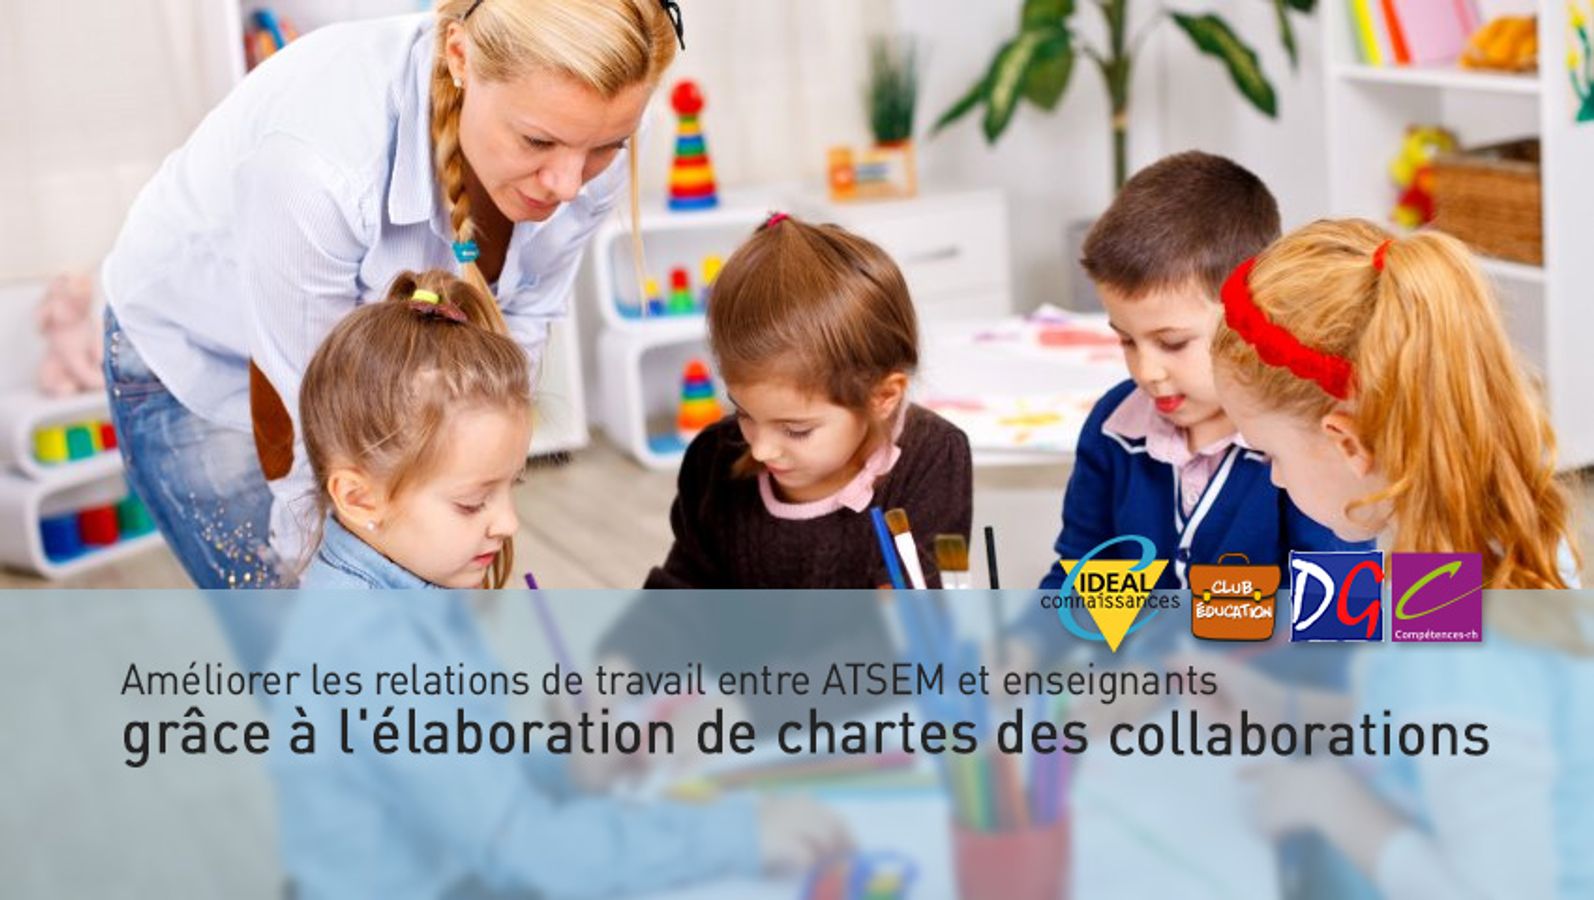 Améliorer les relations de travail entre ATSEM et enseignants grâce à l'élaboration de chartes des collaborations